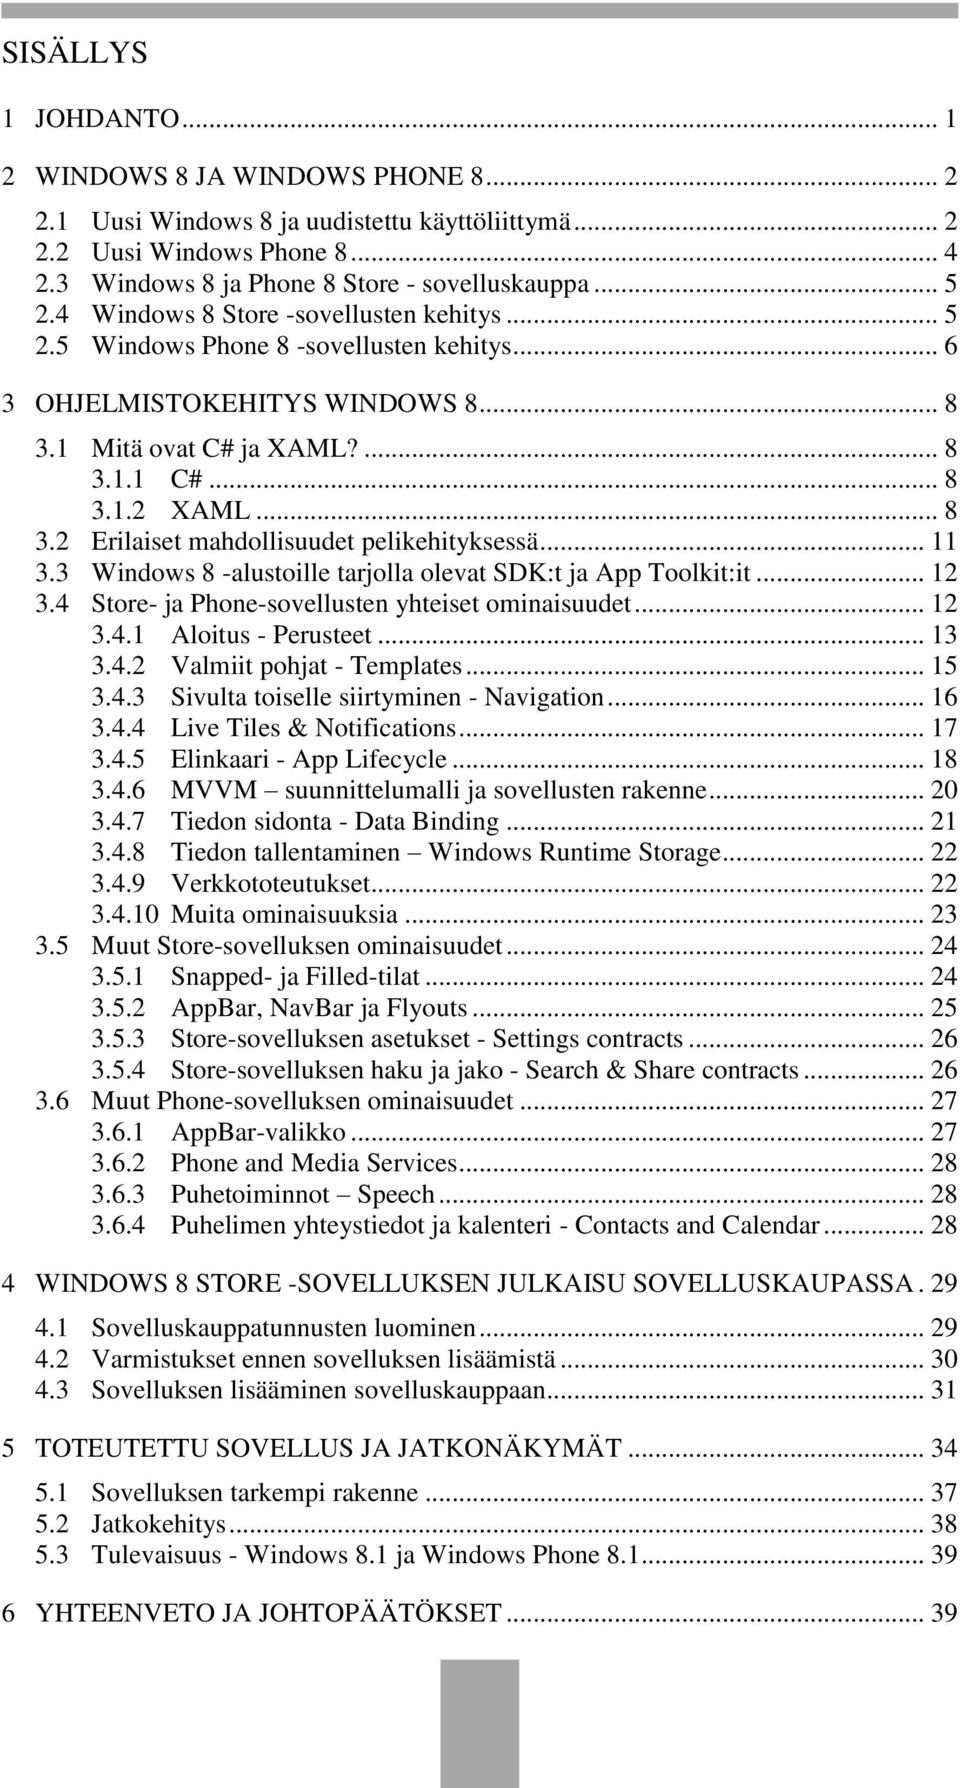 .. 11 3.3 Windows 8 -alustoille tarjolla olevat SDK:t ja App Toolkit:it... 12 3.4 Store- ja Phone-sovellusten yhteiset ominaisuudet... 12 3.4.1 Aloitus - Perusteet... 13 3.4.2 Valmiit pohjat - Templates.